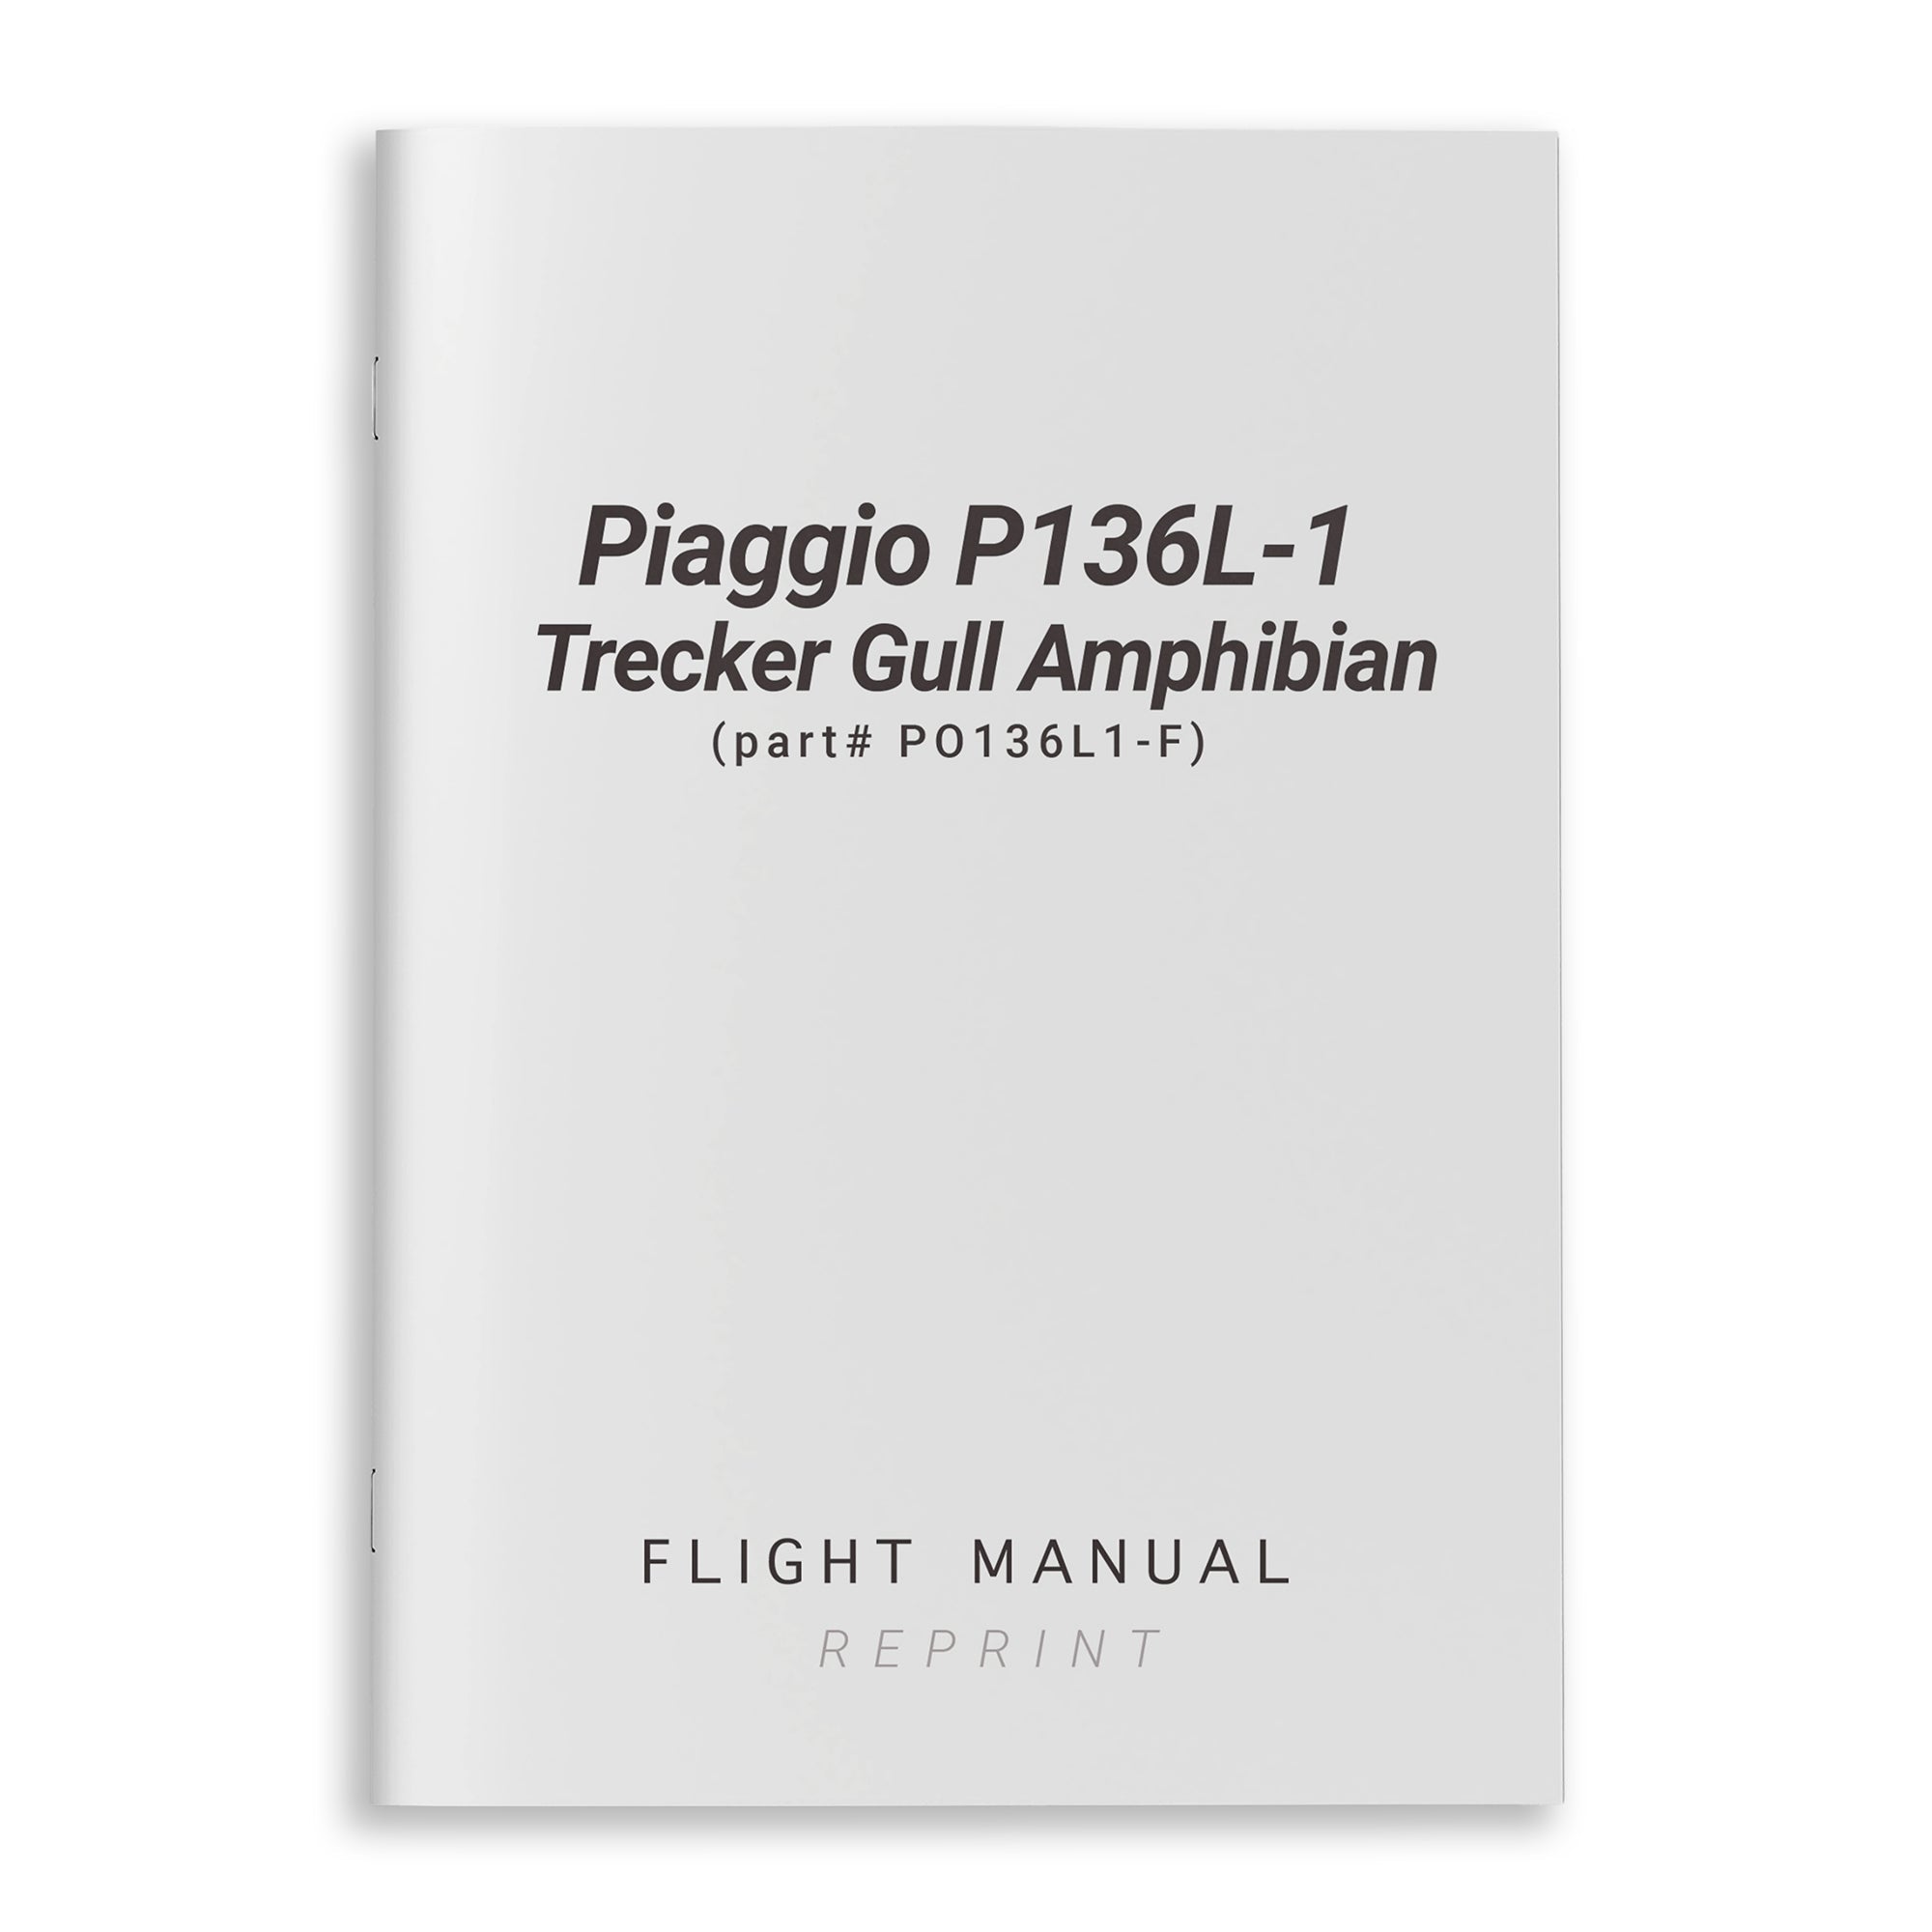 Piaggio P136L-1 Trecker Gull Amphibian Flight Manual (part# PO136L1-F) - PilotMall.com